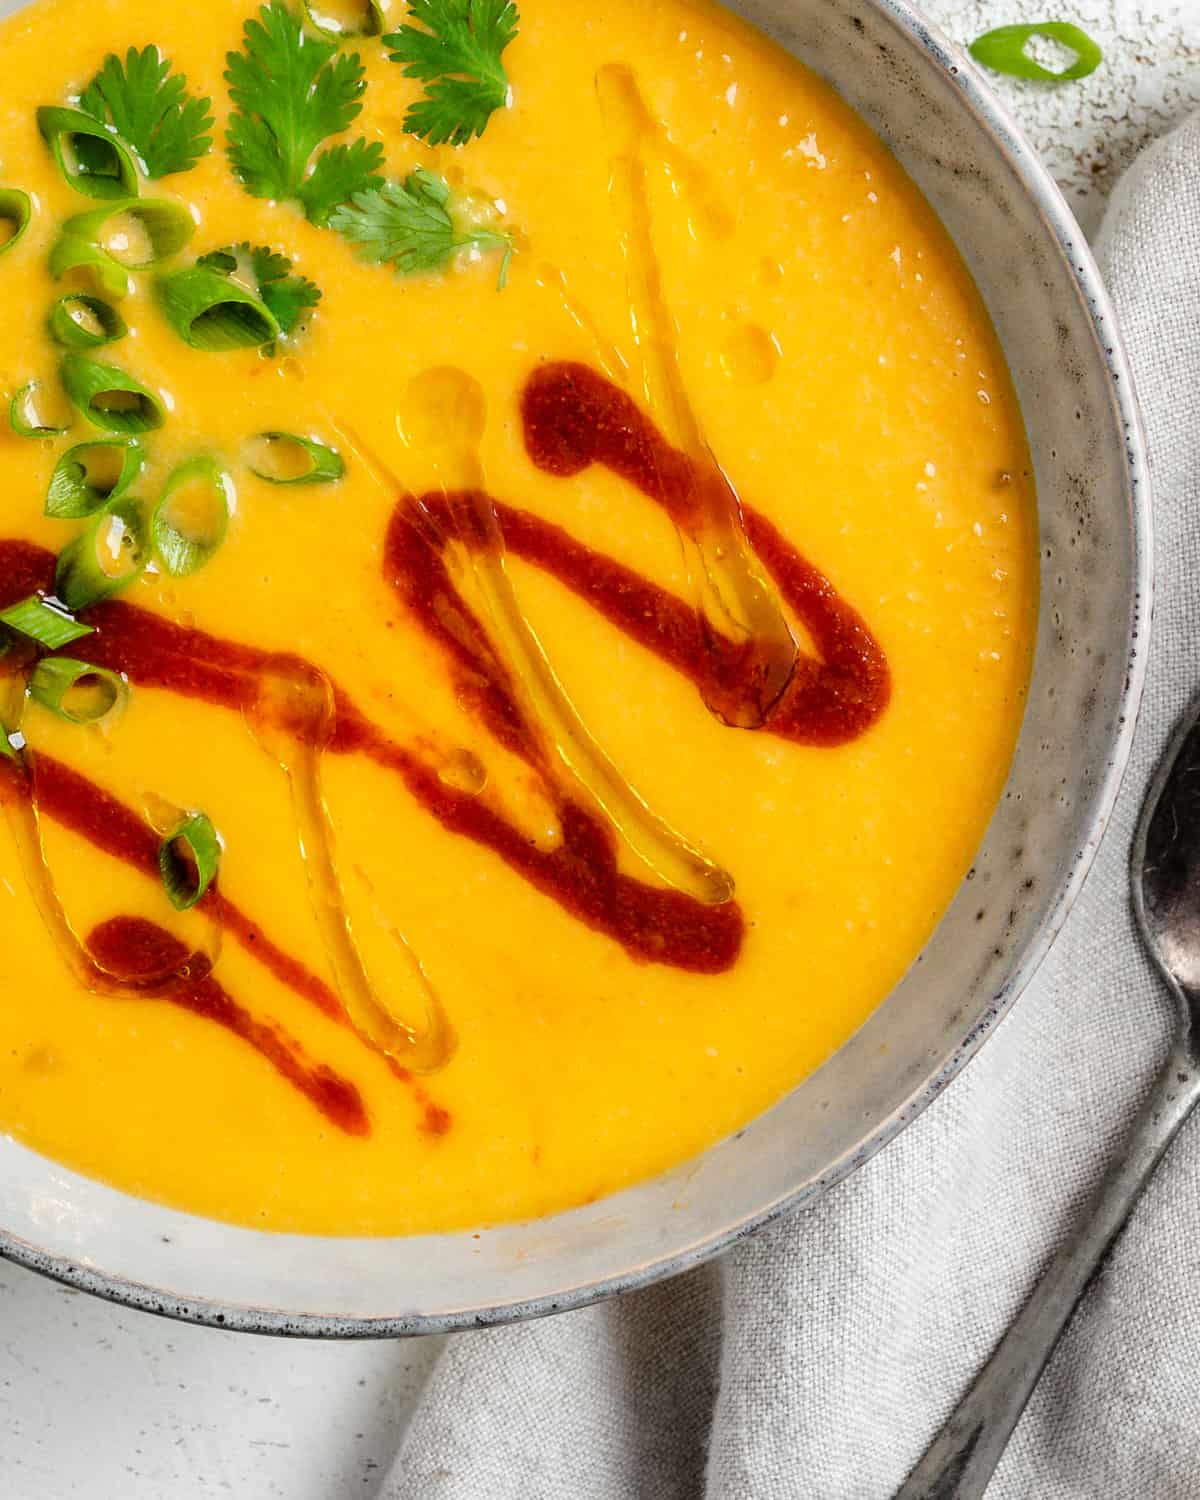 سوپ کدو حلوایی تایلندی را در یک کاسه سفید با پس زمینه سفید کامل کرد